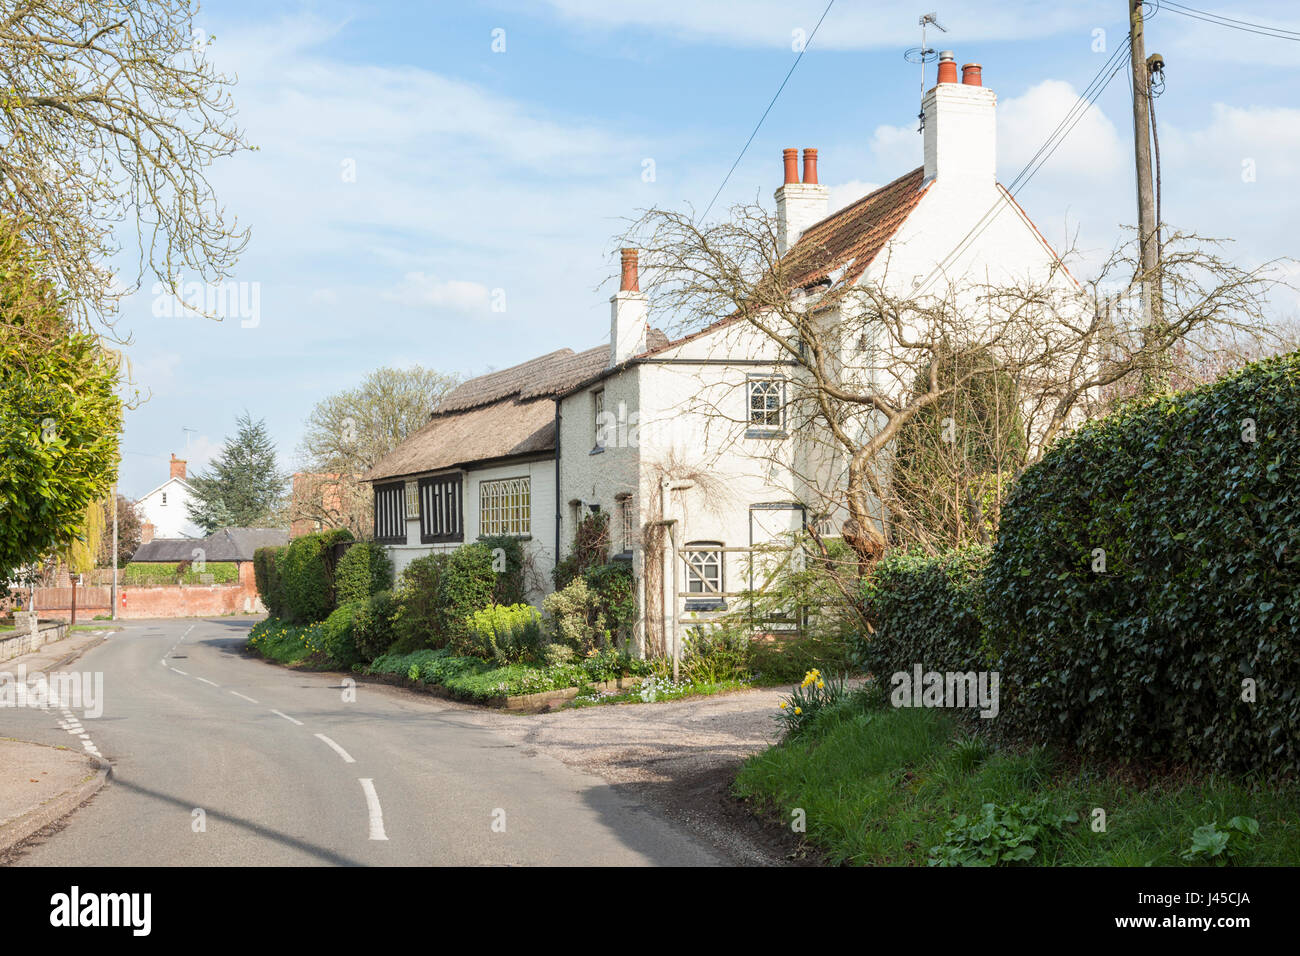 Englisches Dorf Straße mit einem Cottage, in den ländlichen Nottinghamshire Dorf Cropwell Butler, Nottinghamshire, England, Großbritannien Stockfoto